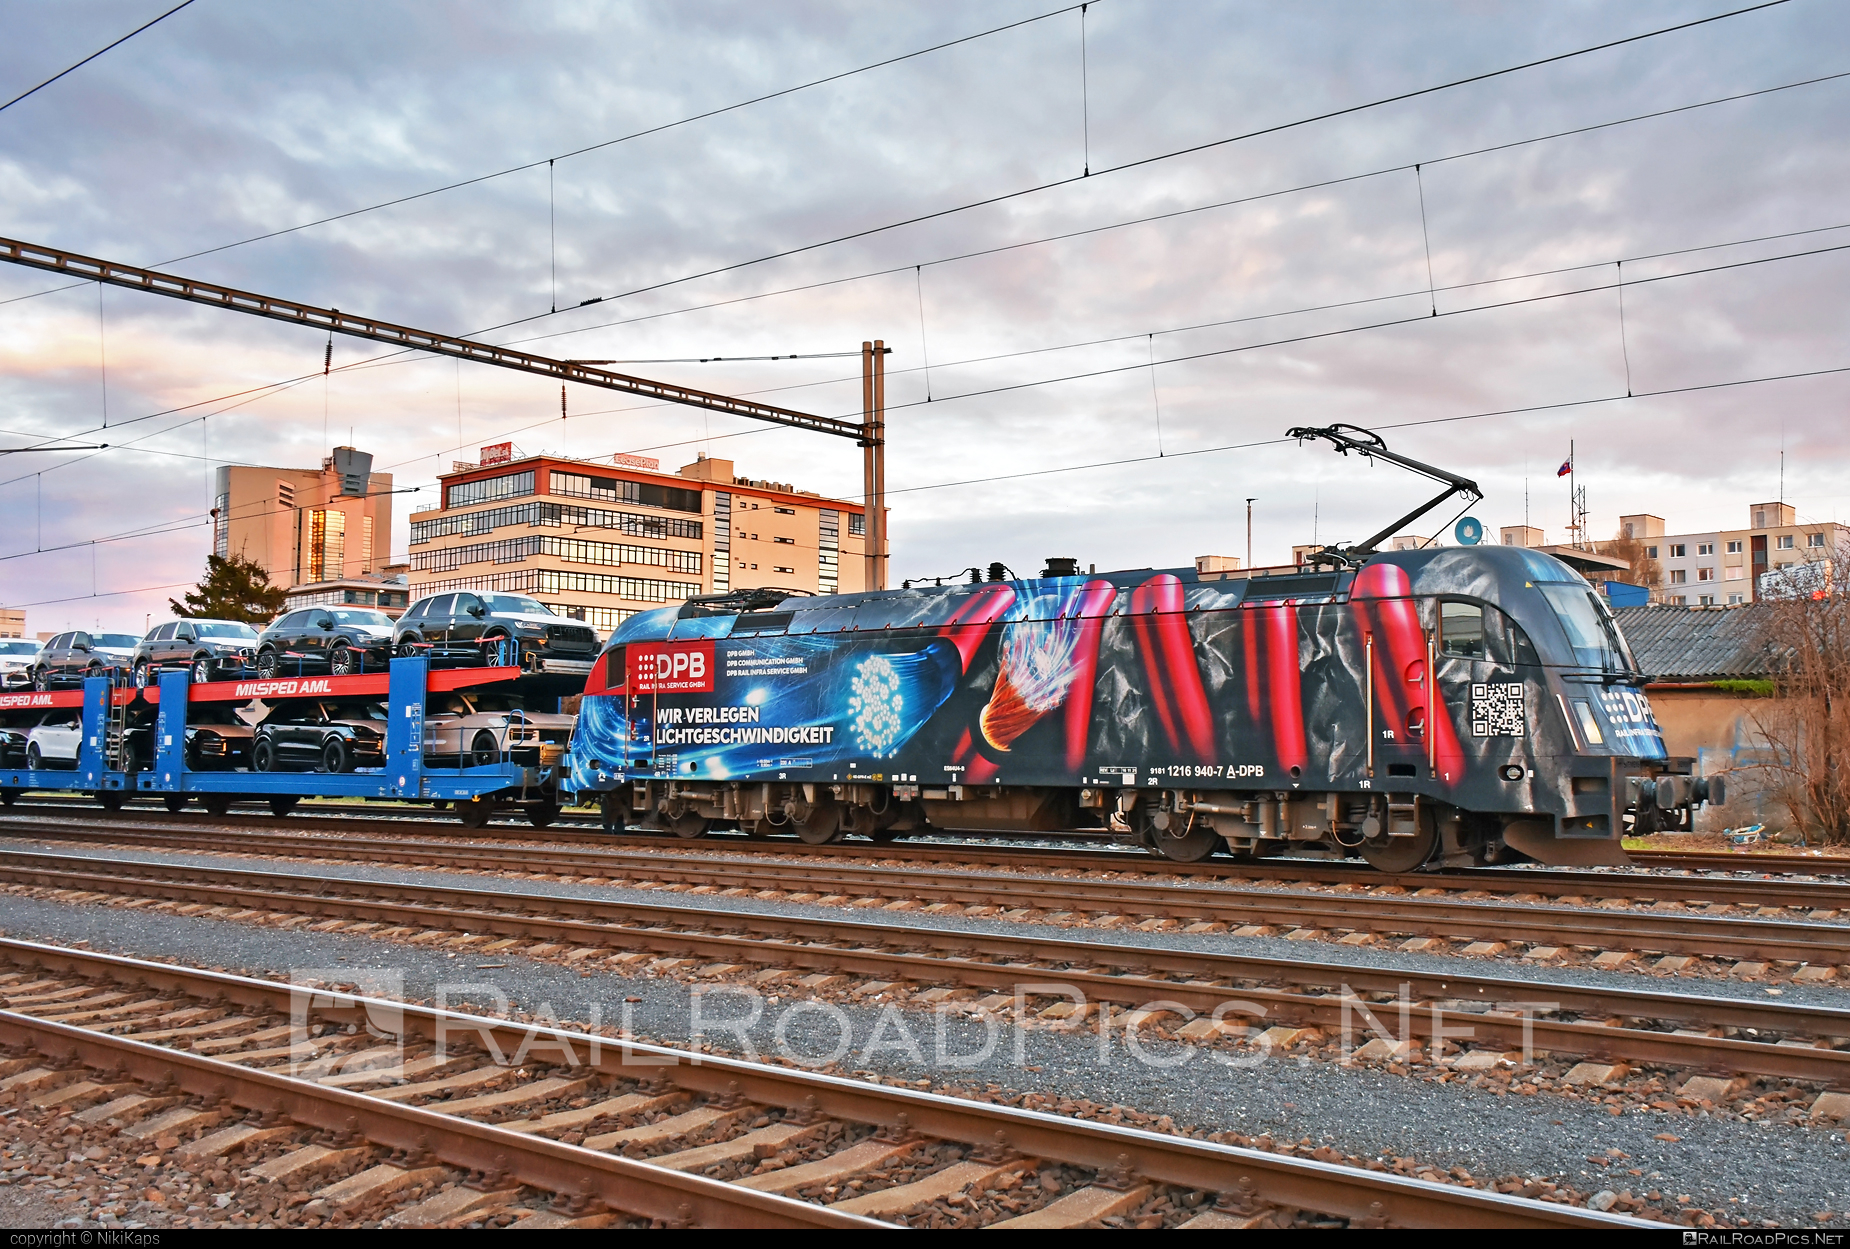 Siemens ES 64 U4 - 1216 940 operated by DPB Rail Infra Service GmbH #carcarrierwagon #dpb #dpbRailInfraService #dpbRailInfraServiceGmbh #es64 #es64u4 #eurosprinter #milspedaml #siemens #siemensEs64 #siemensEs64u4 #siemenstaurus #taurus #tauruslocomotive